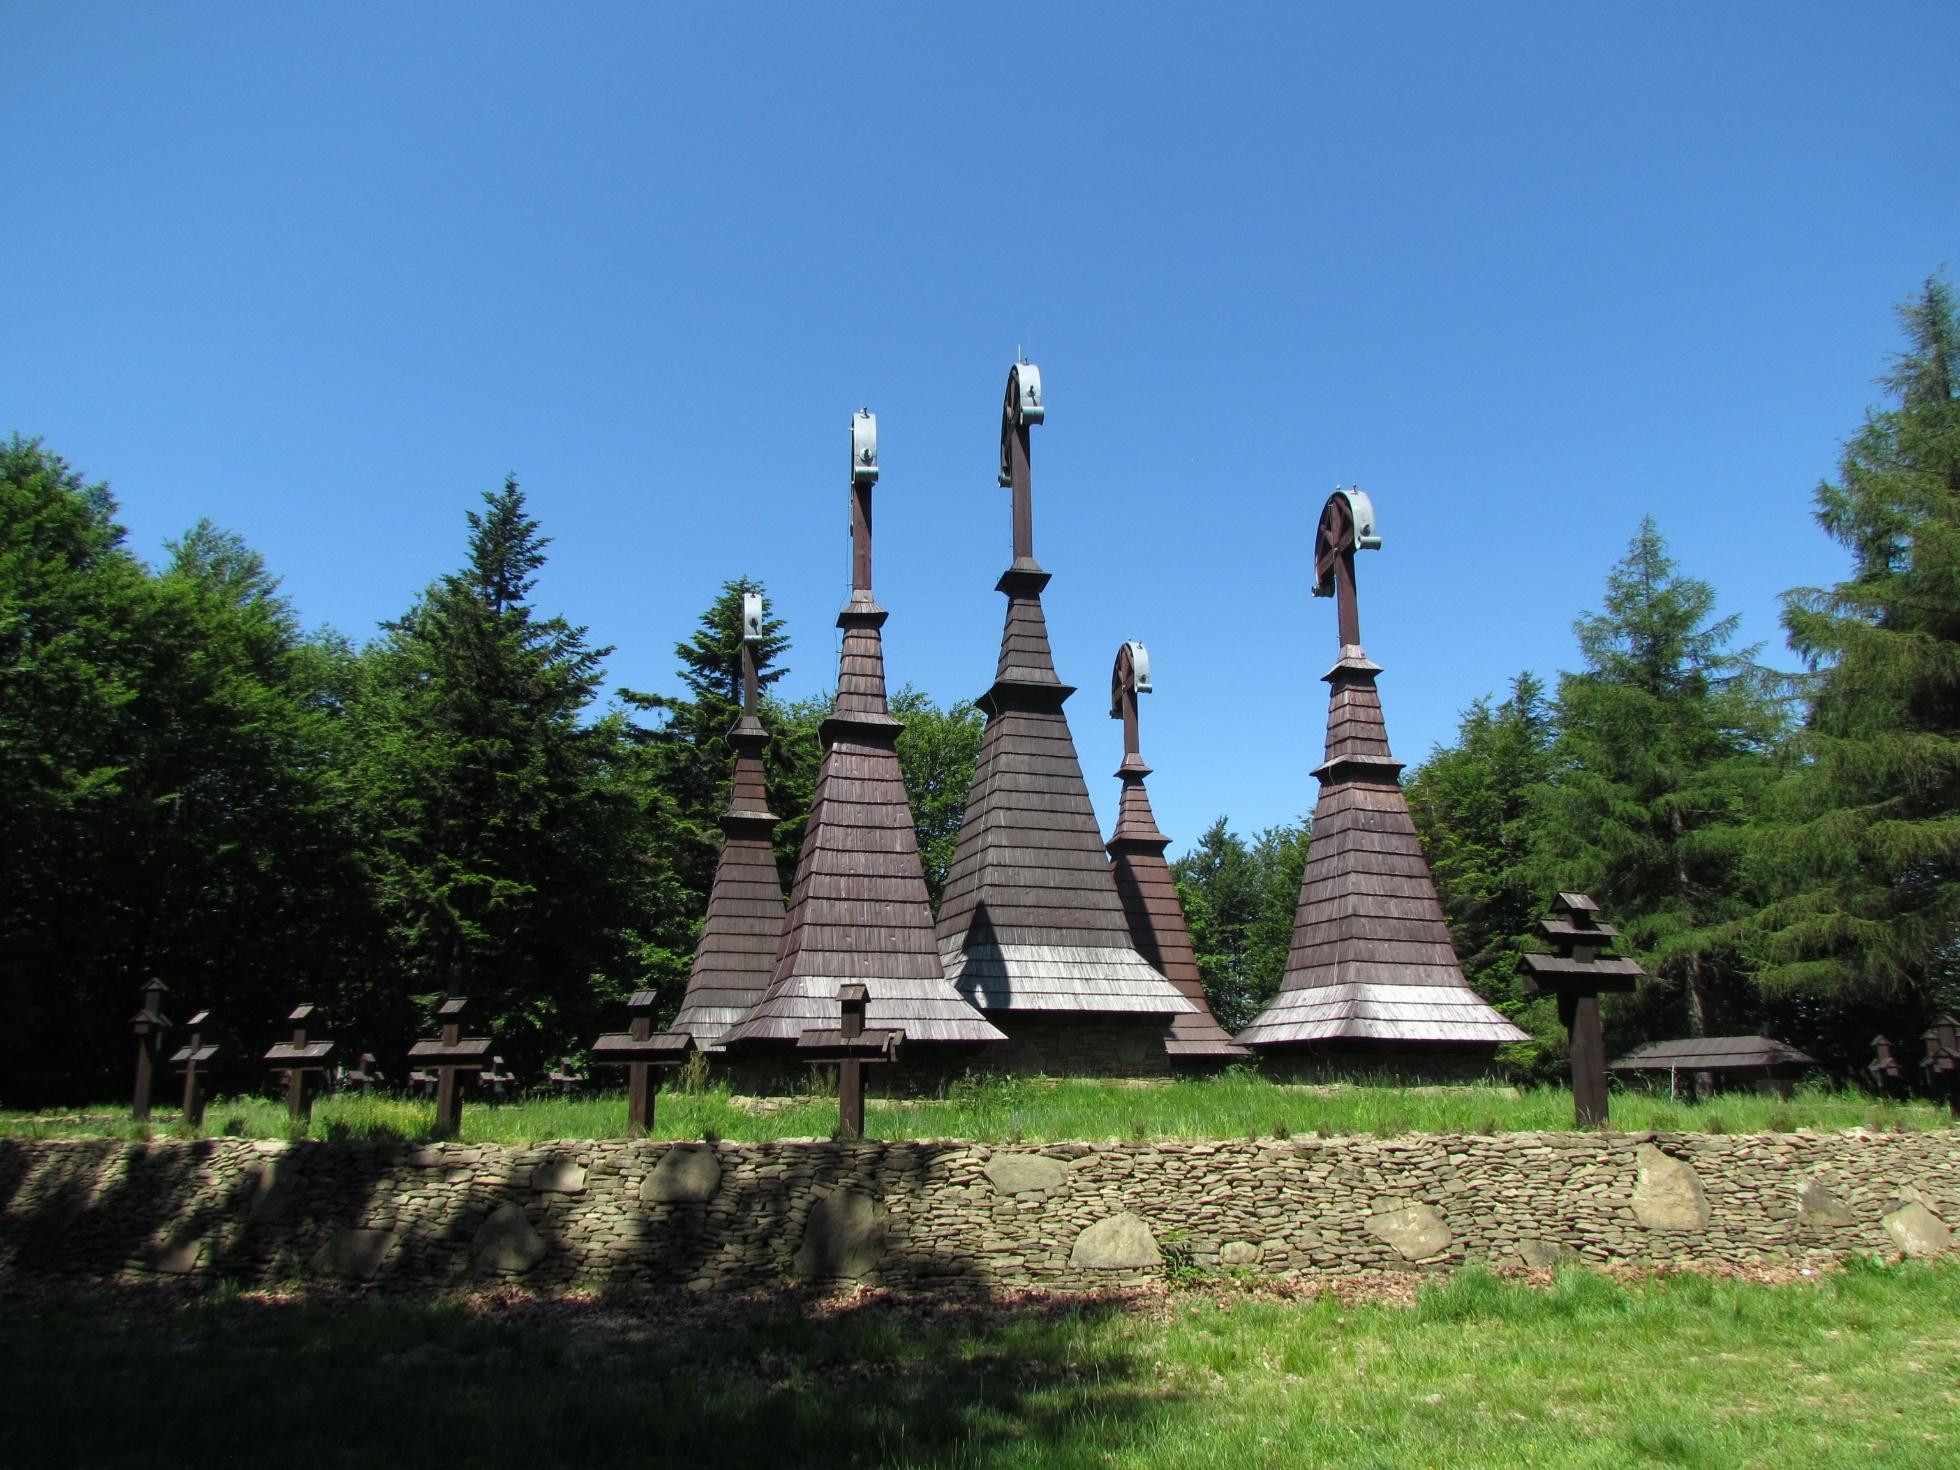 Hora Rotunda - dielo Dušana Samuela Jurkoviča (cintorín z 1. svetovej vojny)